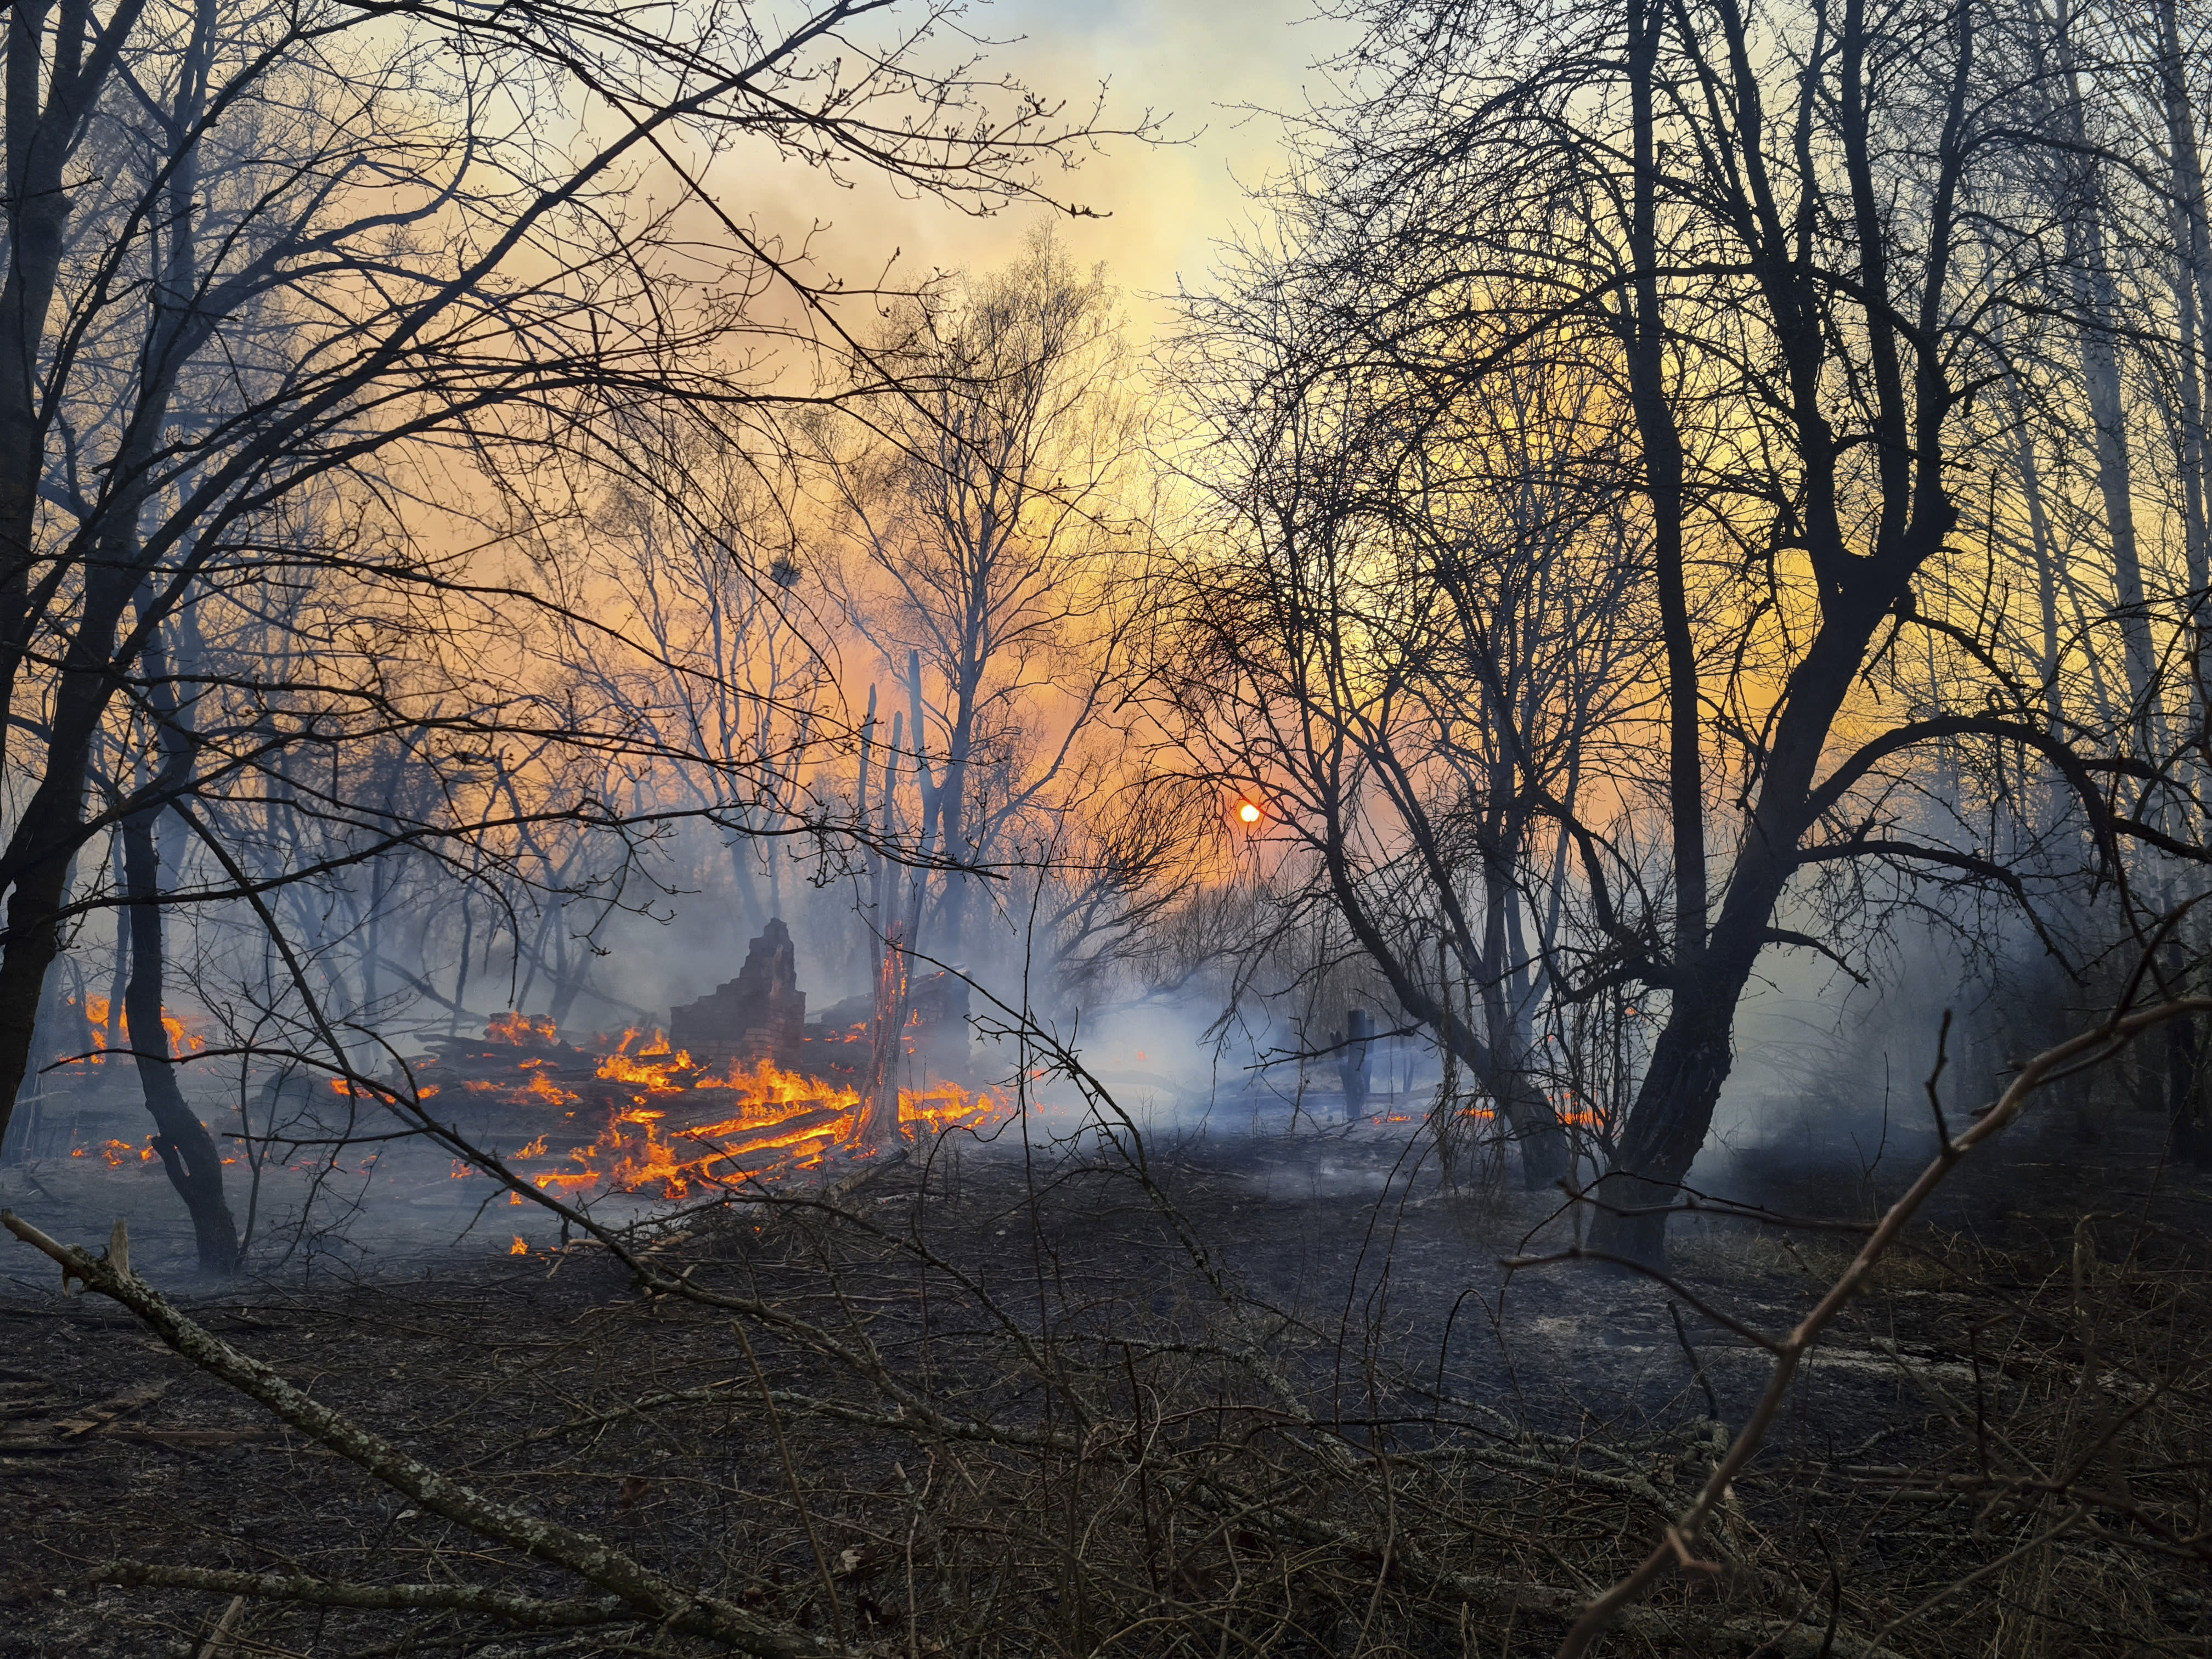 Ukraine Battles Forest Fires Near Chernobyl